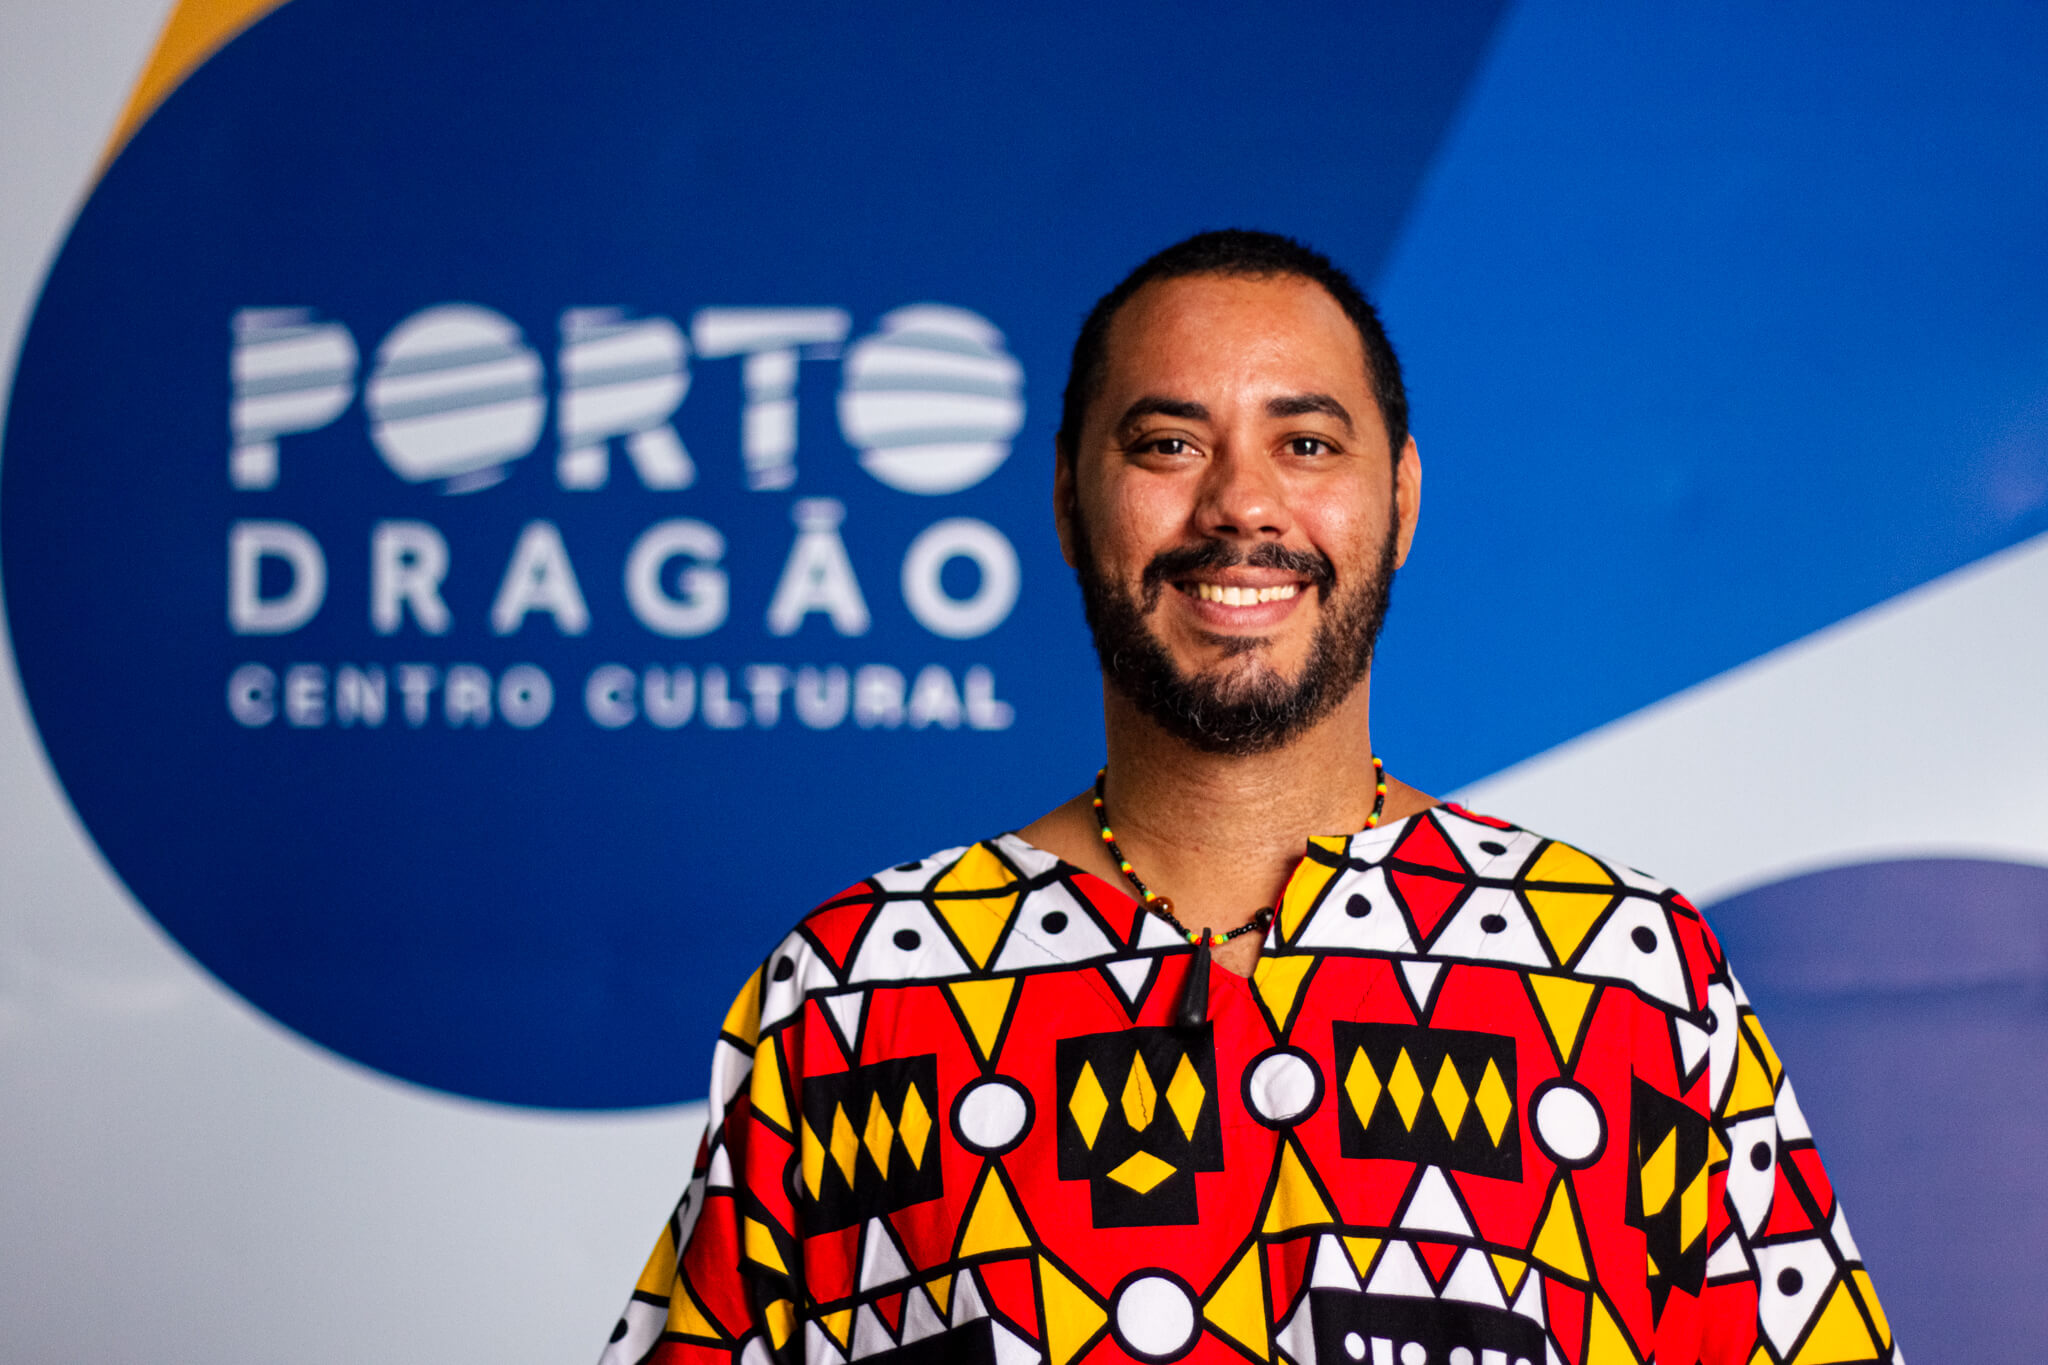 Um homem negro, alto, cabelos e barba, bigode negros, veste uma camisa com estampas coloridas em amarelo e vermelho. Atrás dele, a logo do Porto Dragão (branca sobre um fundo azul).